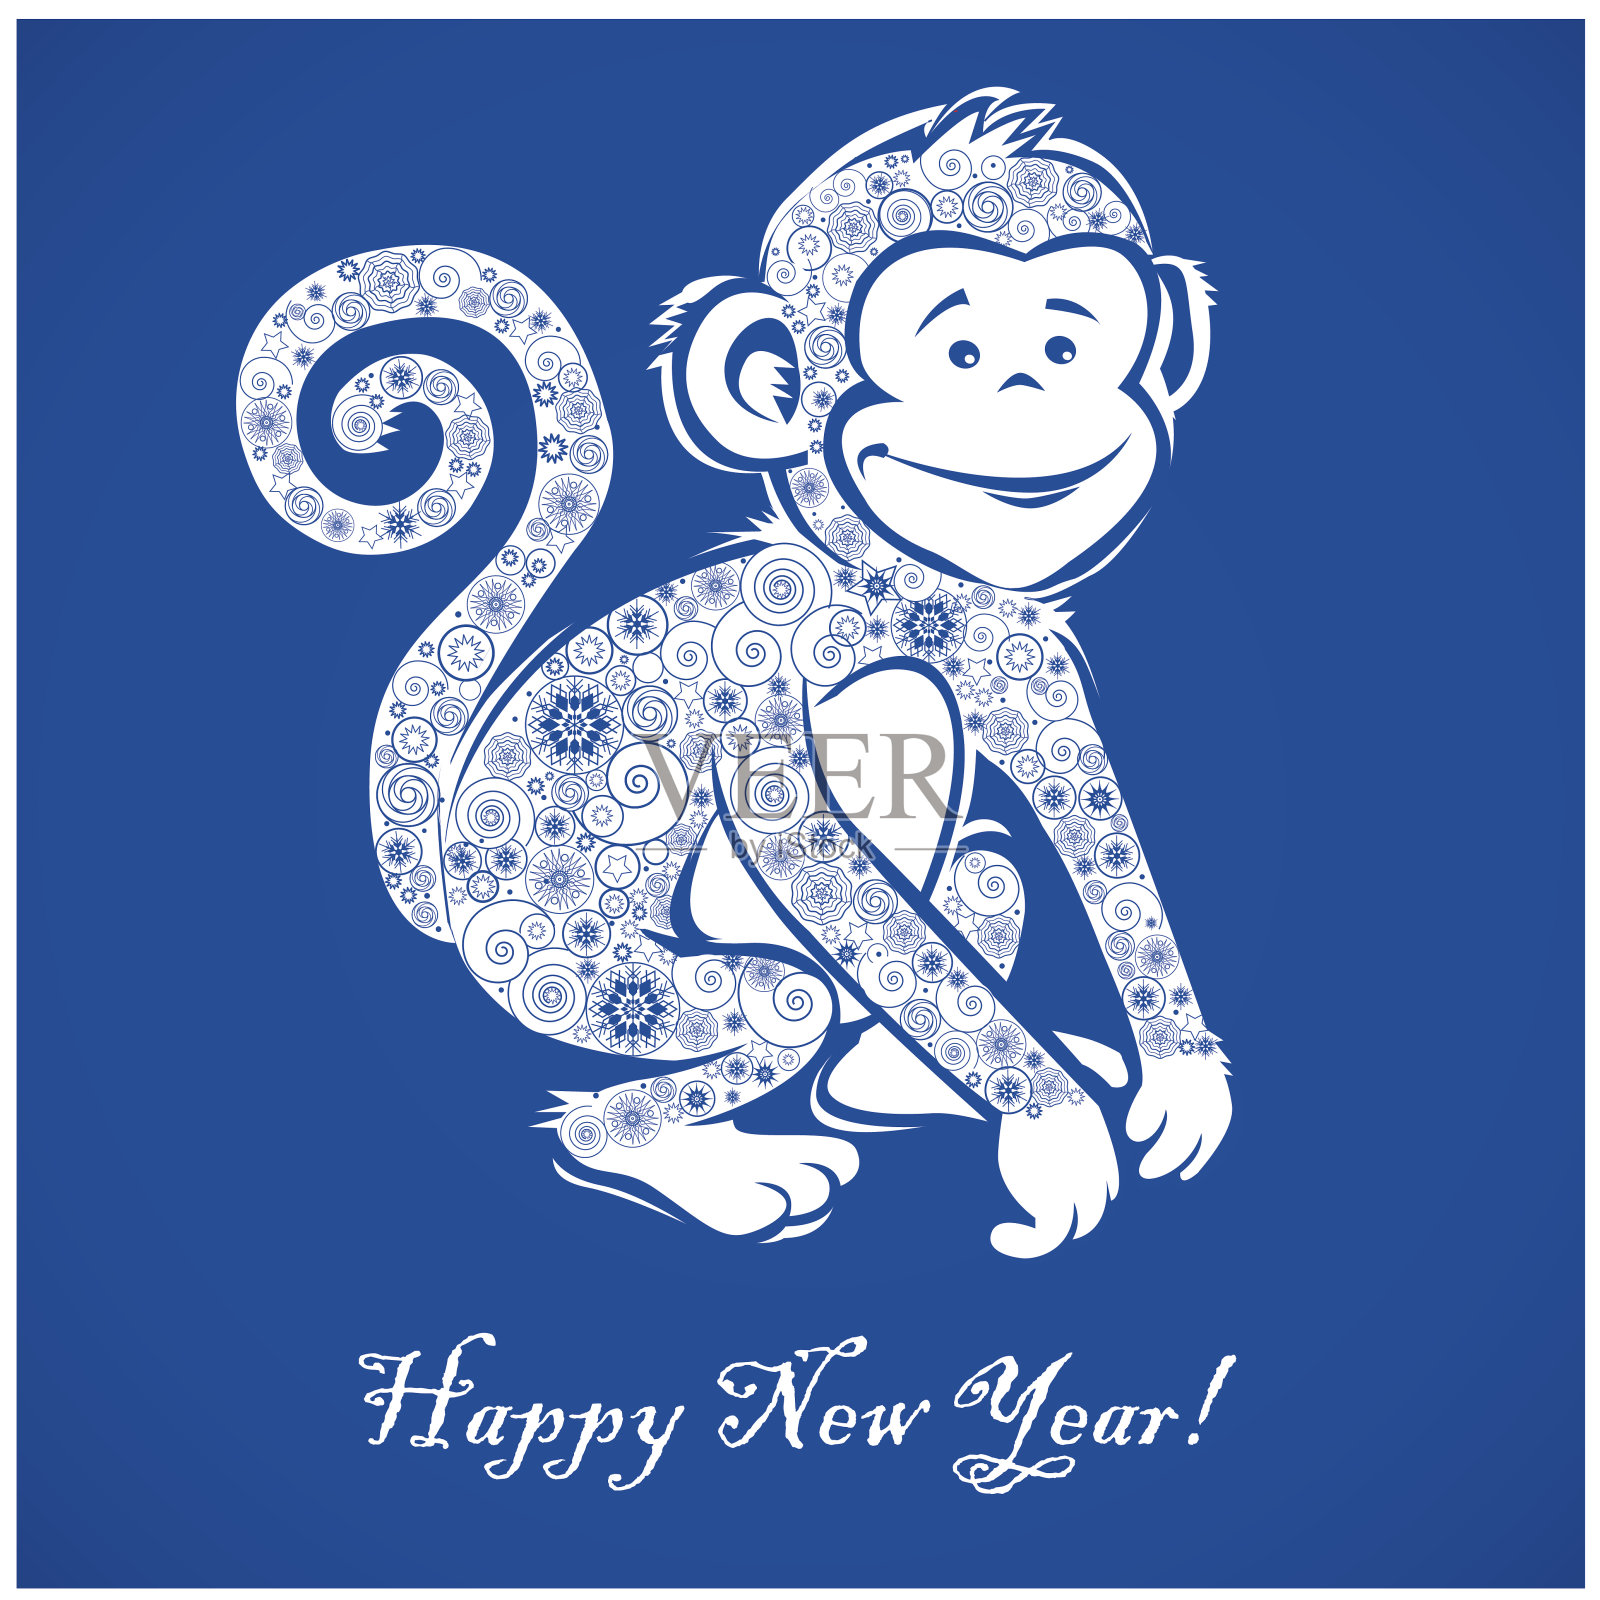 蓝色背景上有趣的猴子插画图片素材